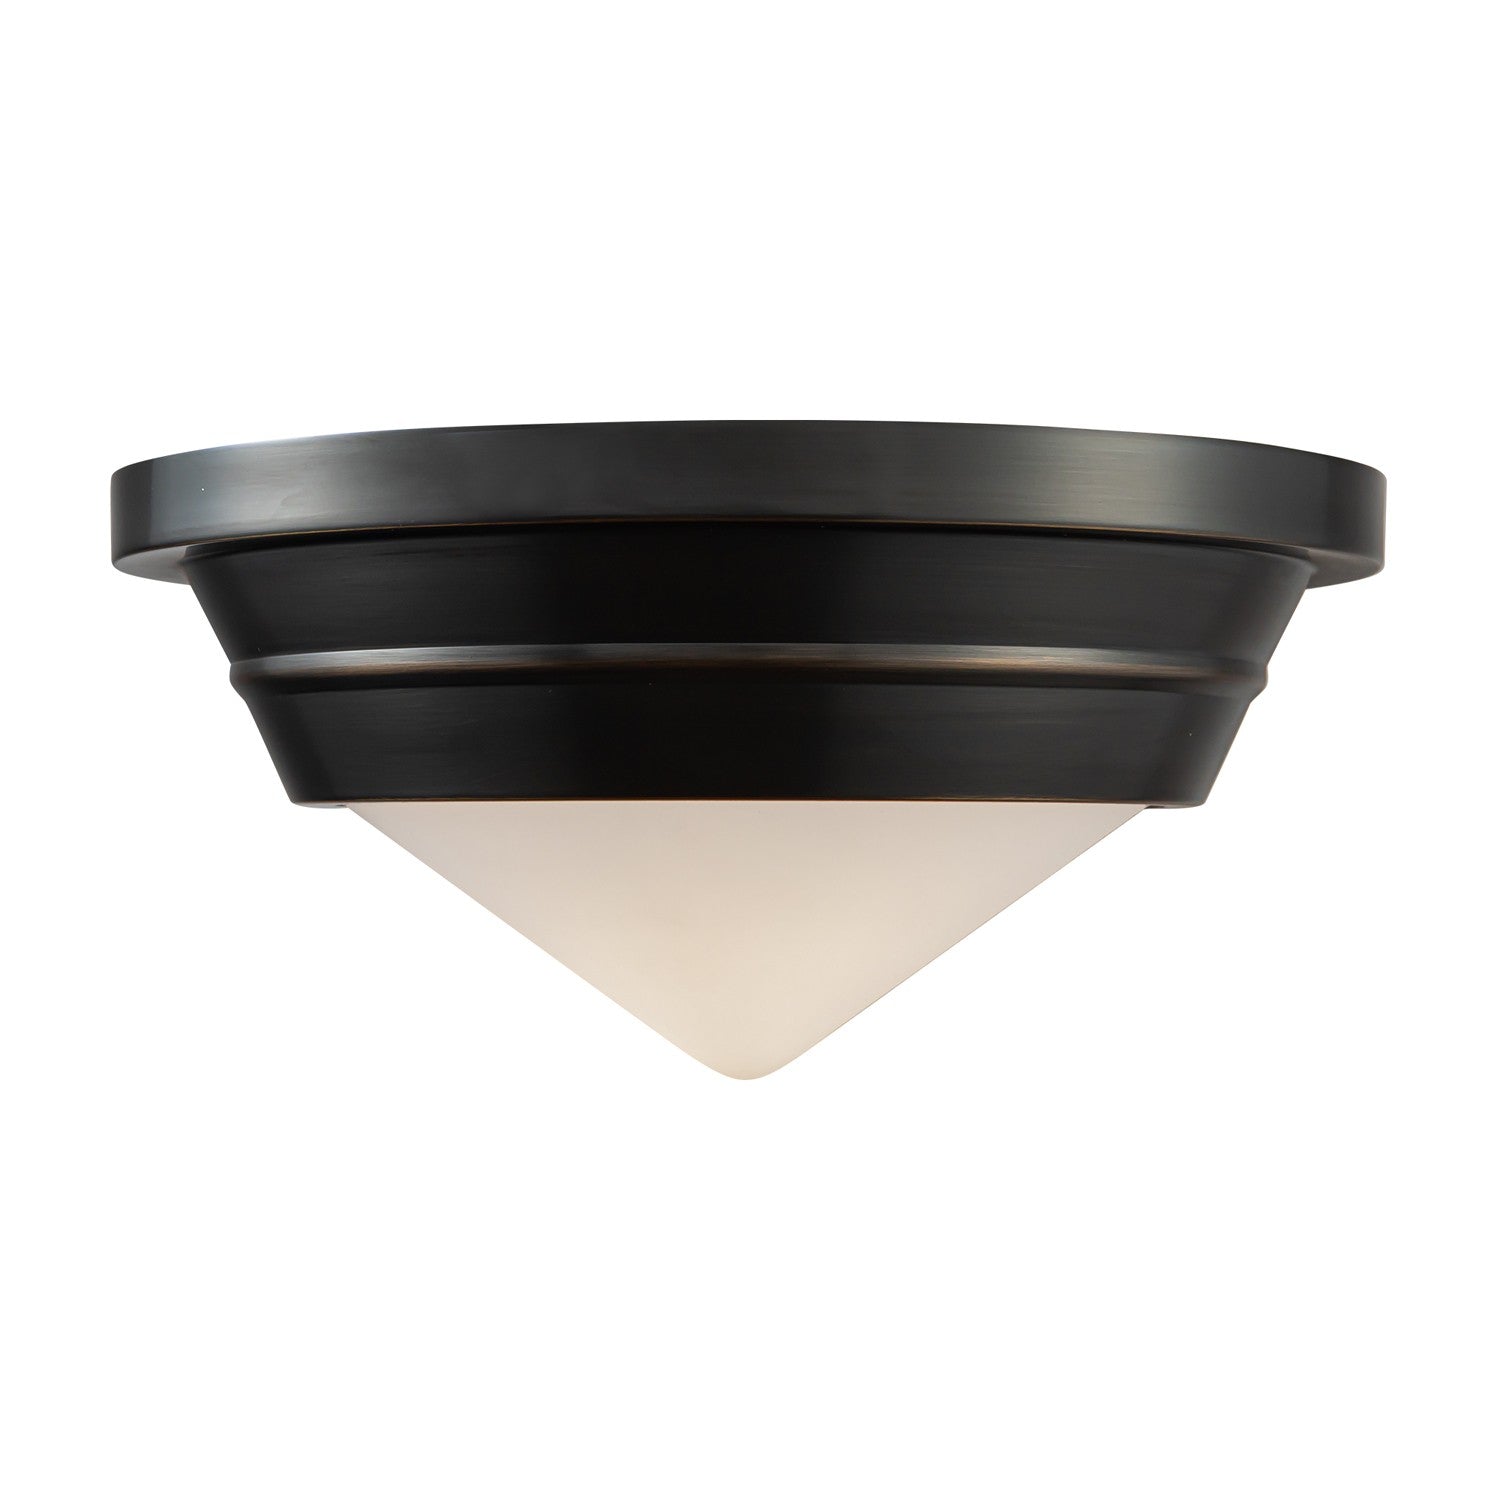 Alora - FM348010UBOP - One Light Flush Mount - Willard - Urban Bronze/Opal Matte Glass